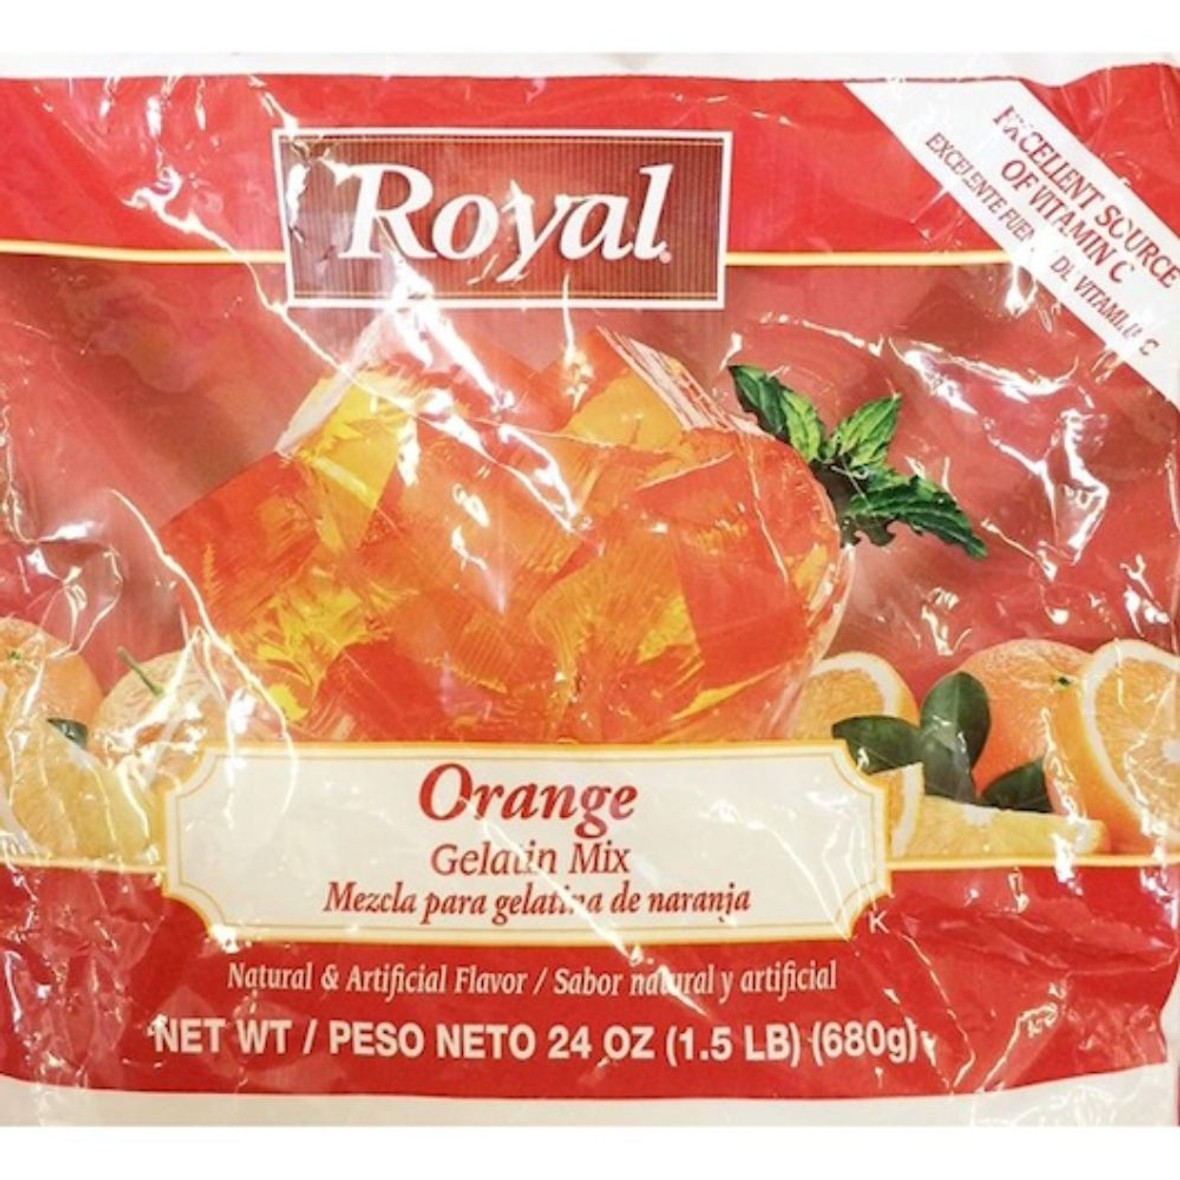 Royal Orange Gelatin Mix, 24 Oz